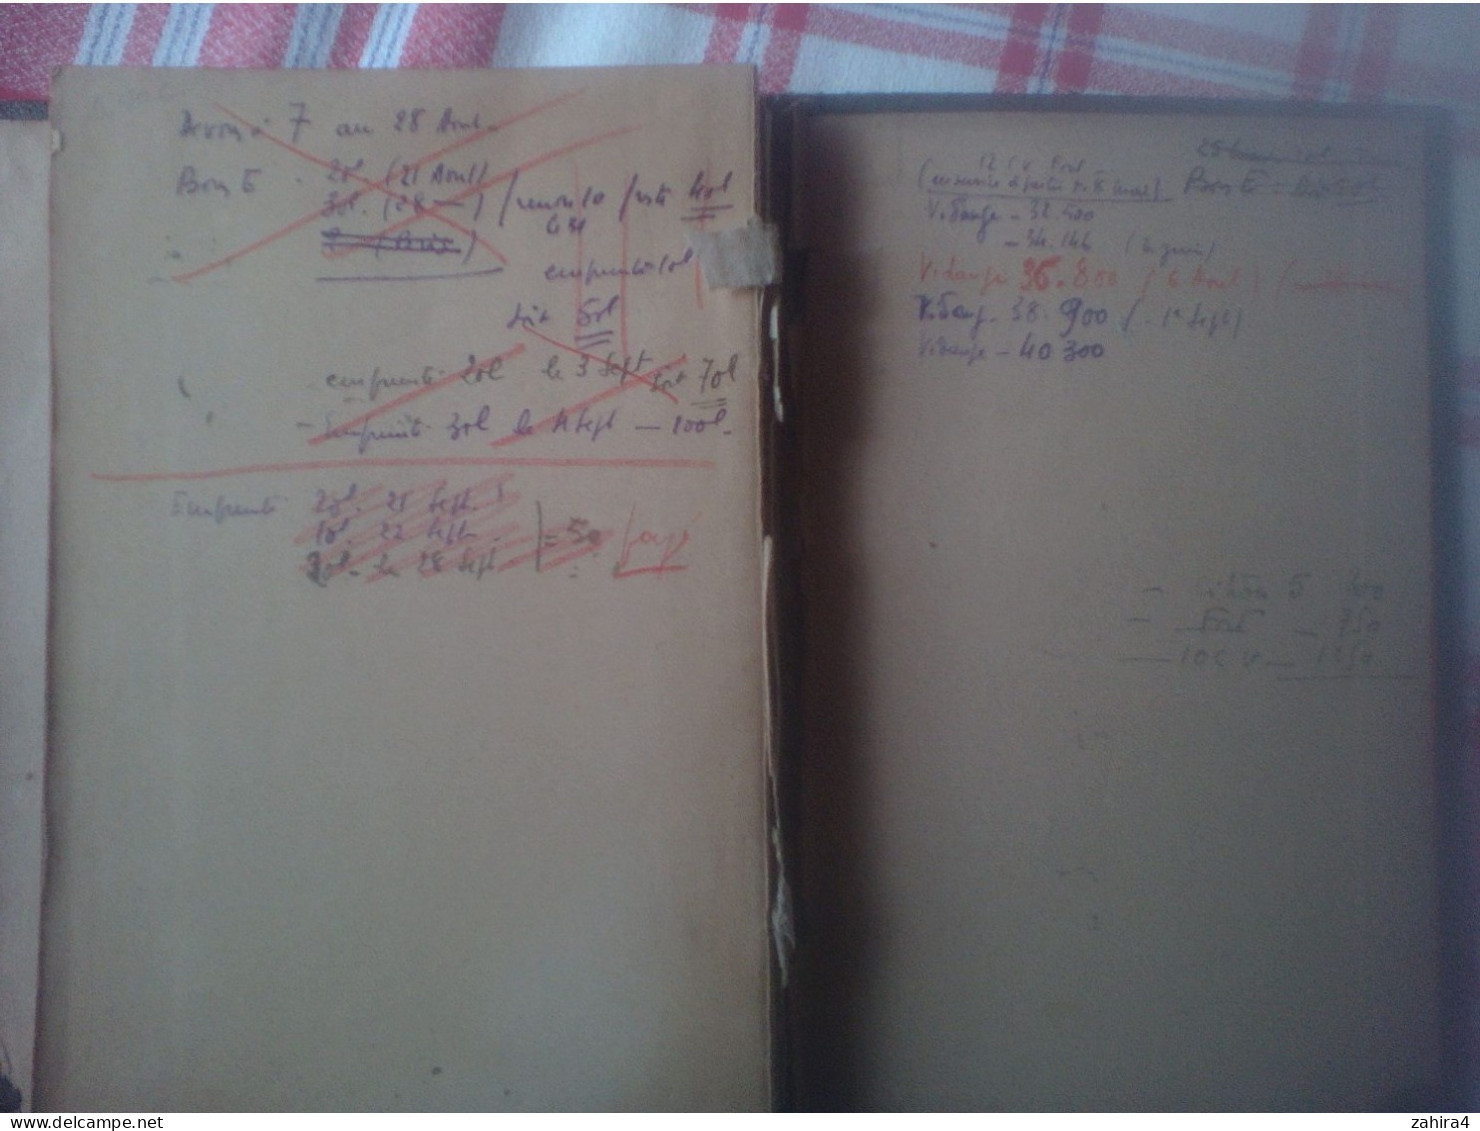 Agenda de bureau pour 1948 d'un vétérinaire de Tarn et Garonne (Possible M. Bachala Castelsarrasin ?)